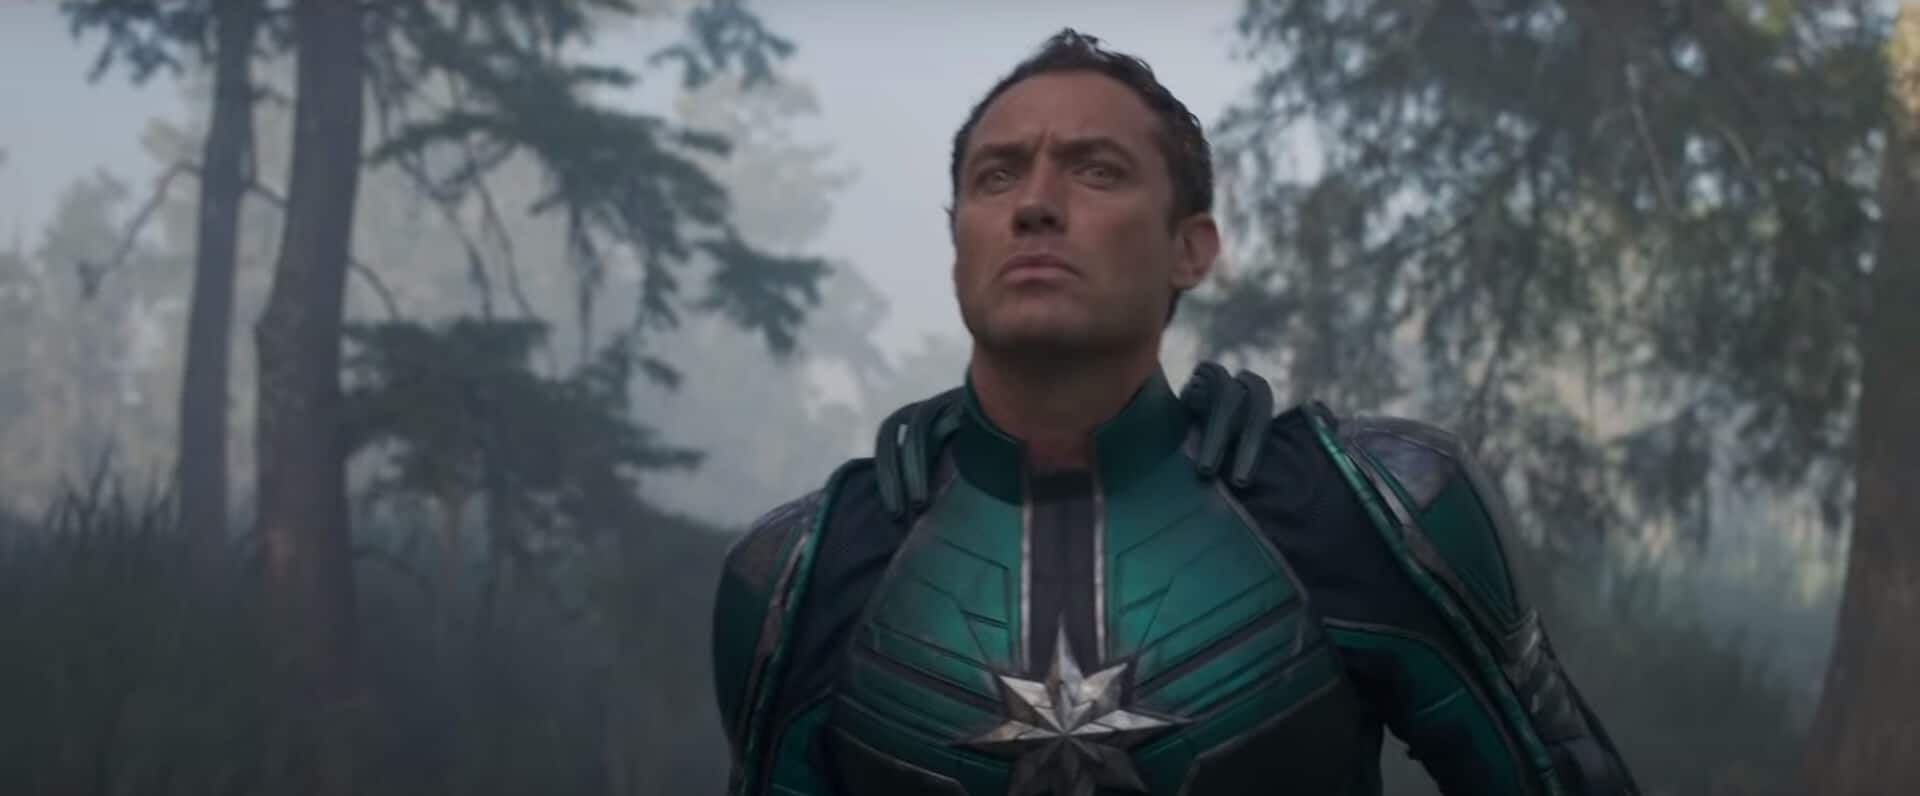 Trailer estendido de Capitã Marvel é exibido na CCXP 2018 – Confira a descrição 03